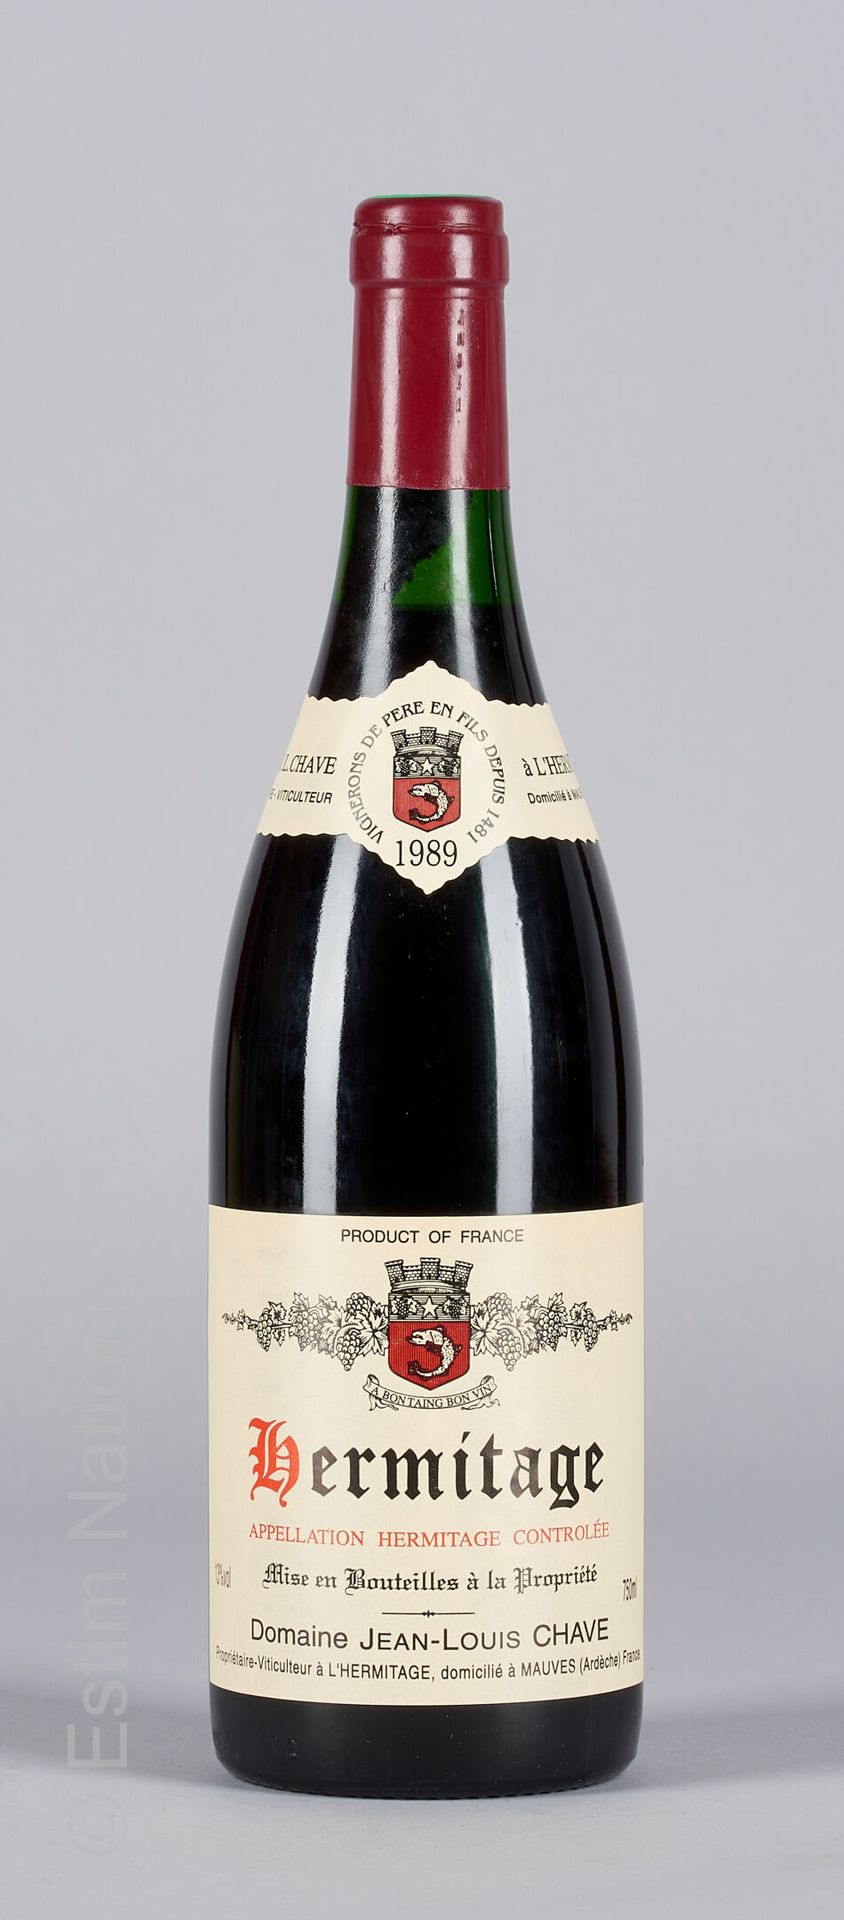 HERMITAGE ROUGE 1 botella HERMITAGE 1989 Jean-Louis Chave

(N. Entre 2 y 2,5cm)